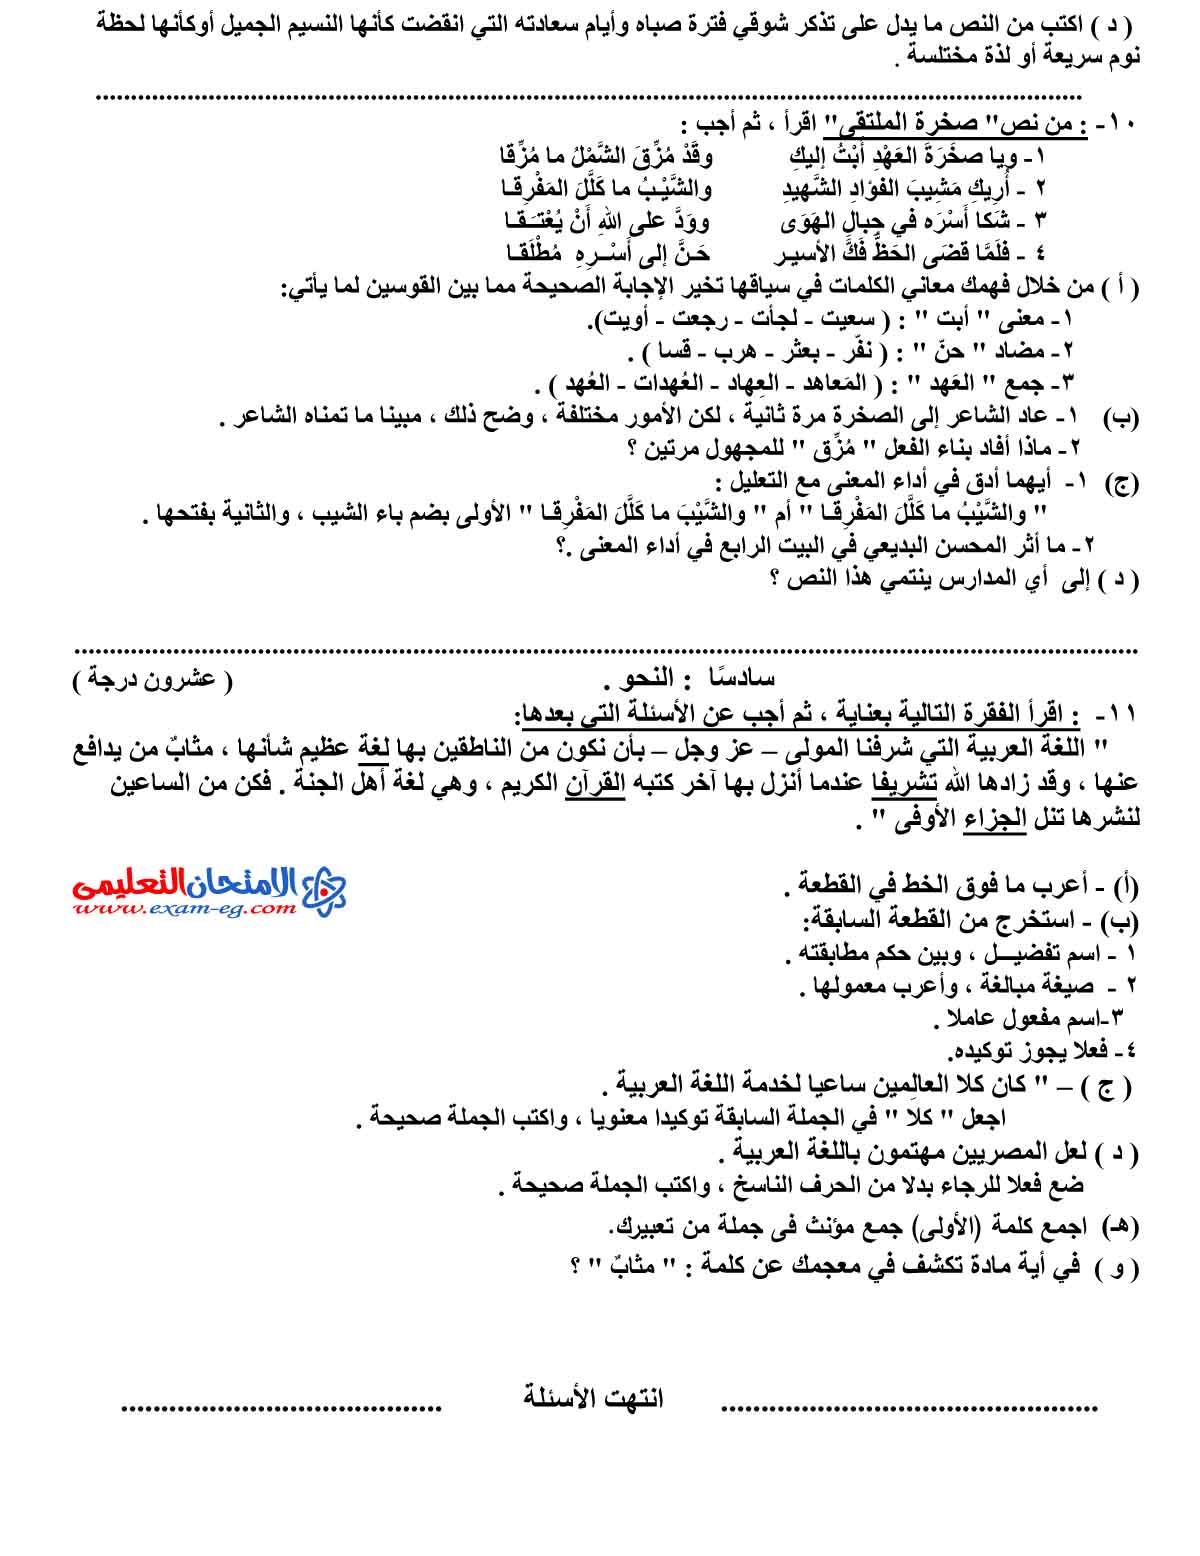 امتحان اللغة العربية 2 - مدرسة اون لاين (4)